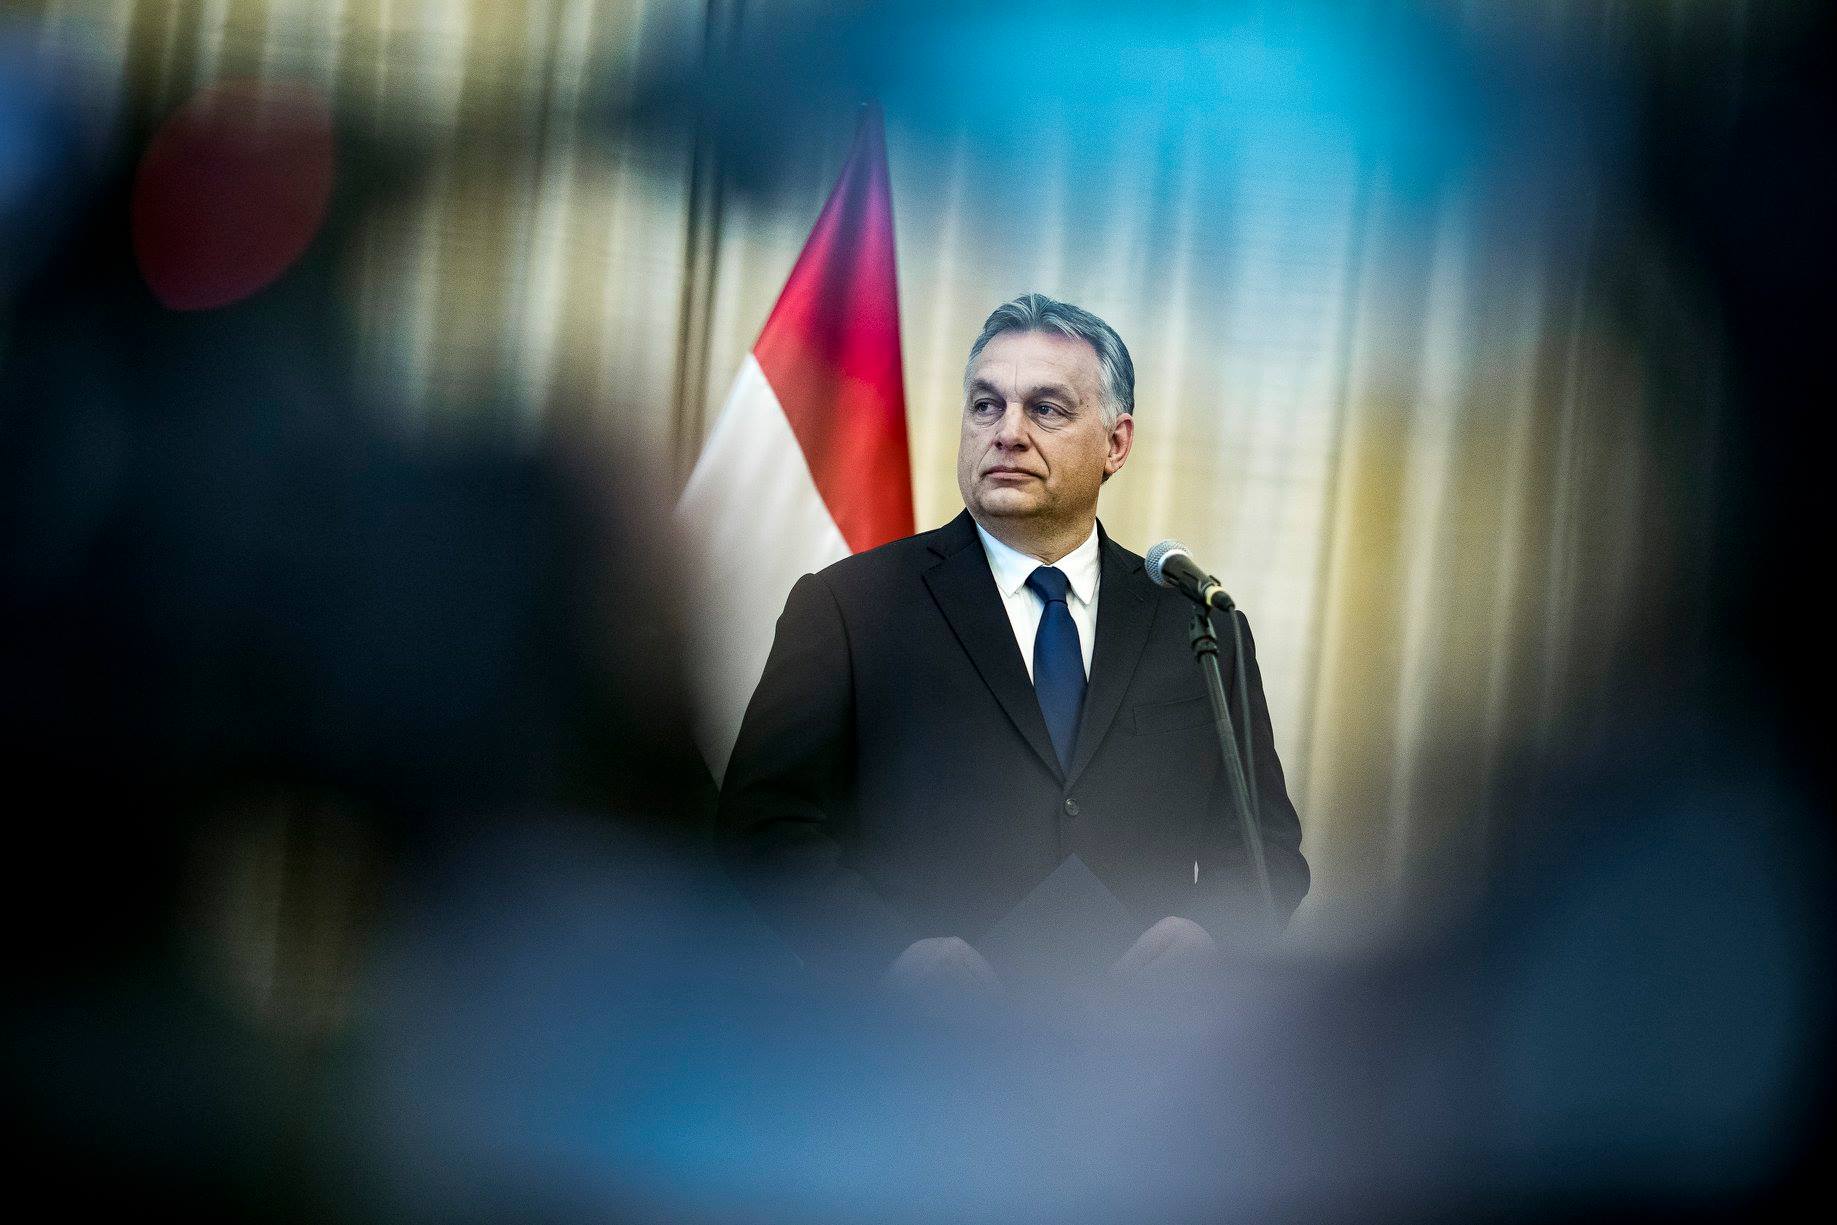 Nézőpont: Orbán Viktor a járványkezelés nyertese